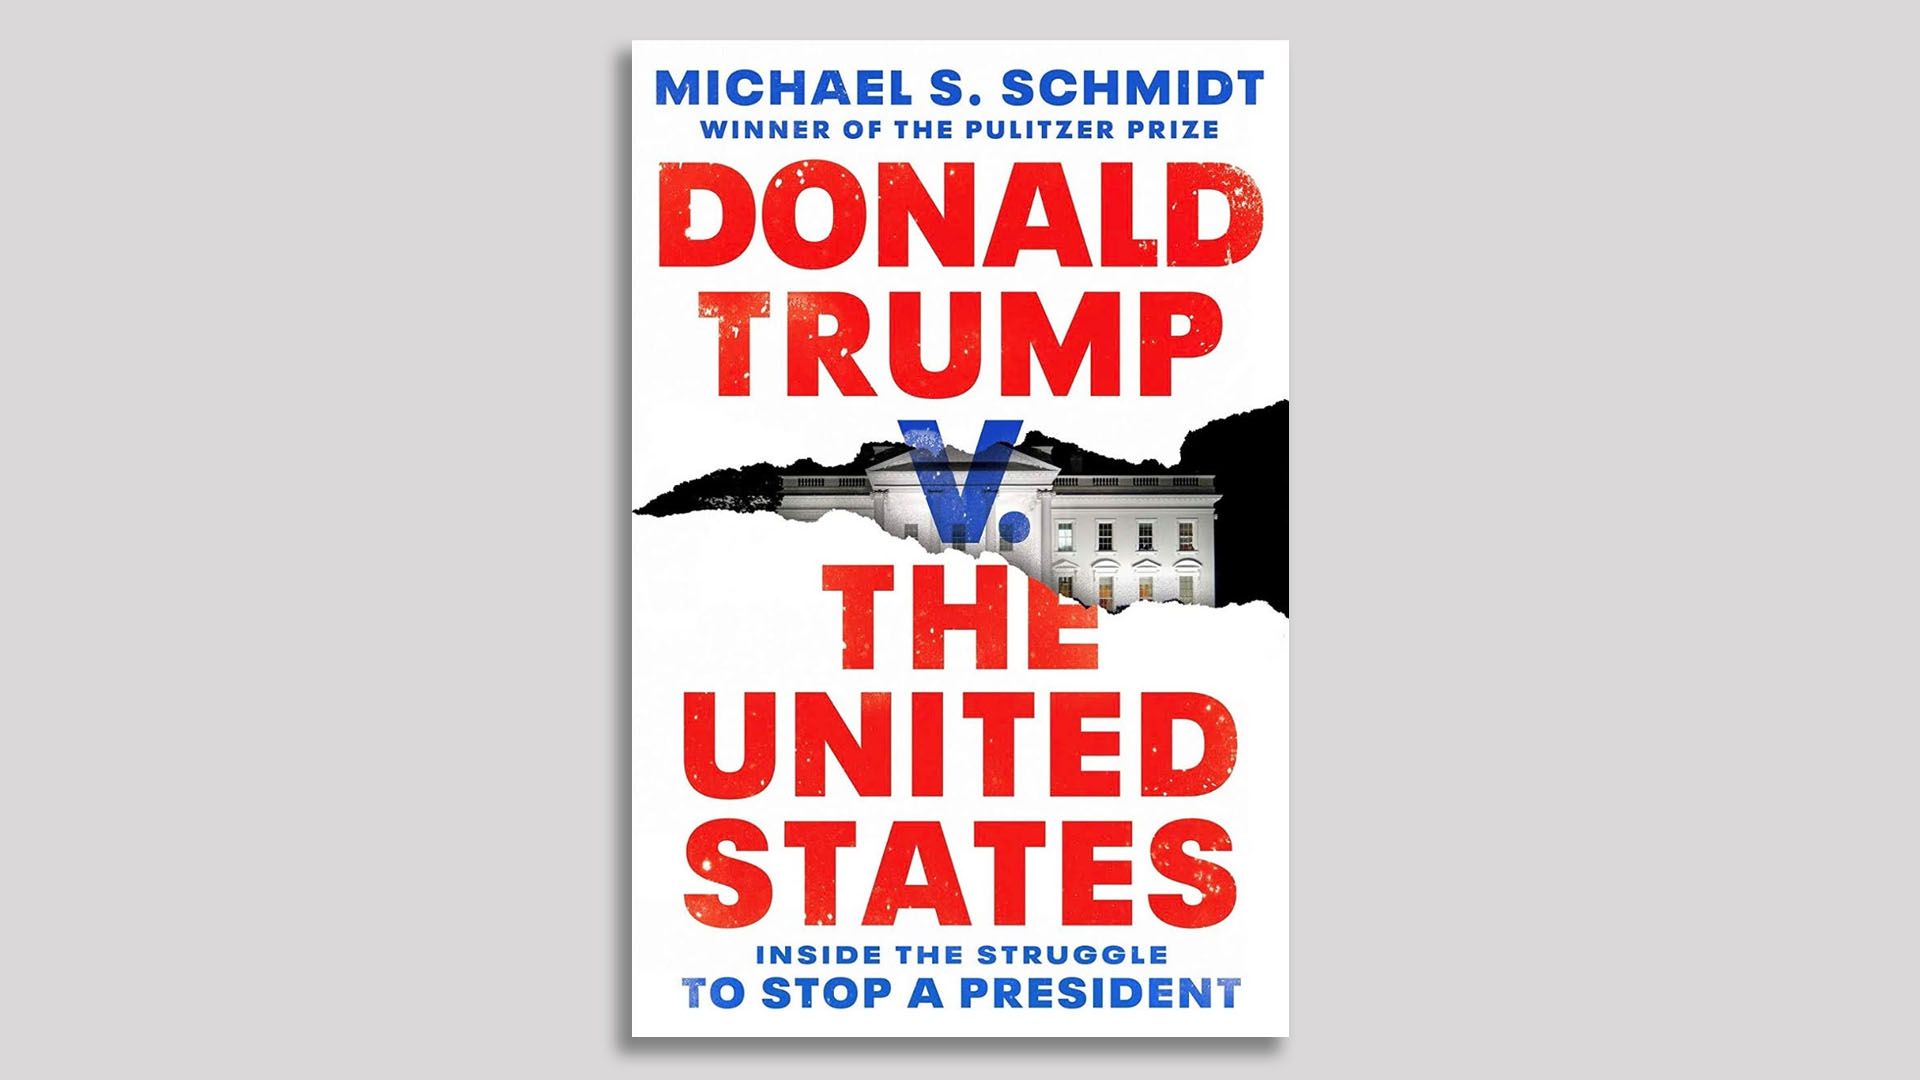 Book cover of Schmidt's book.